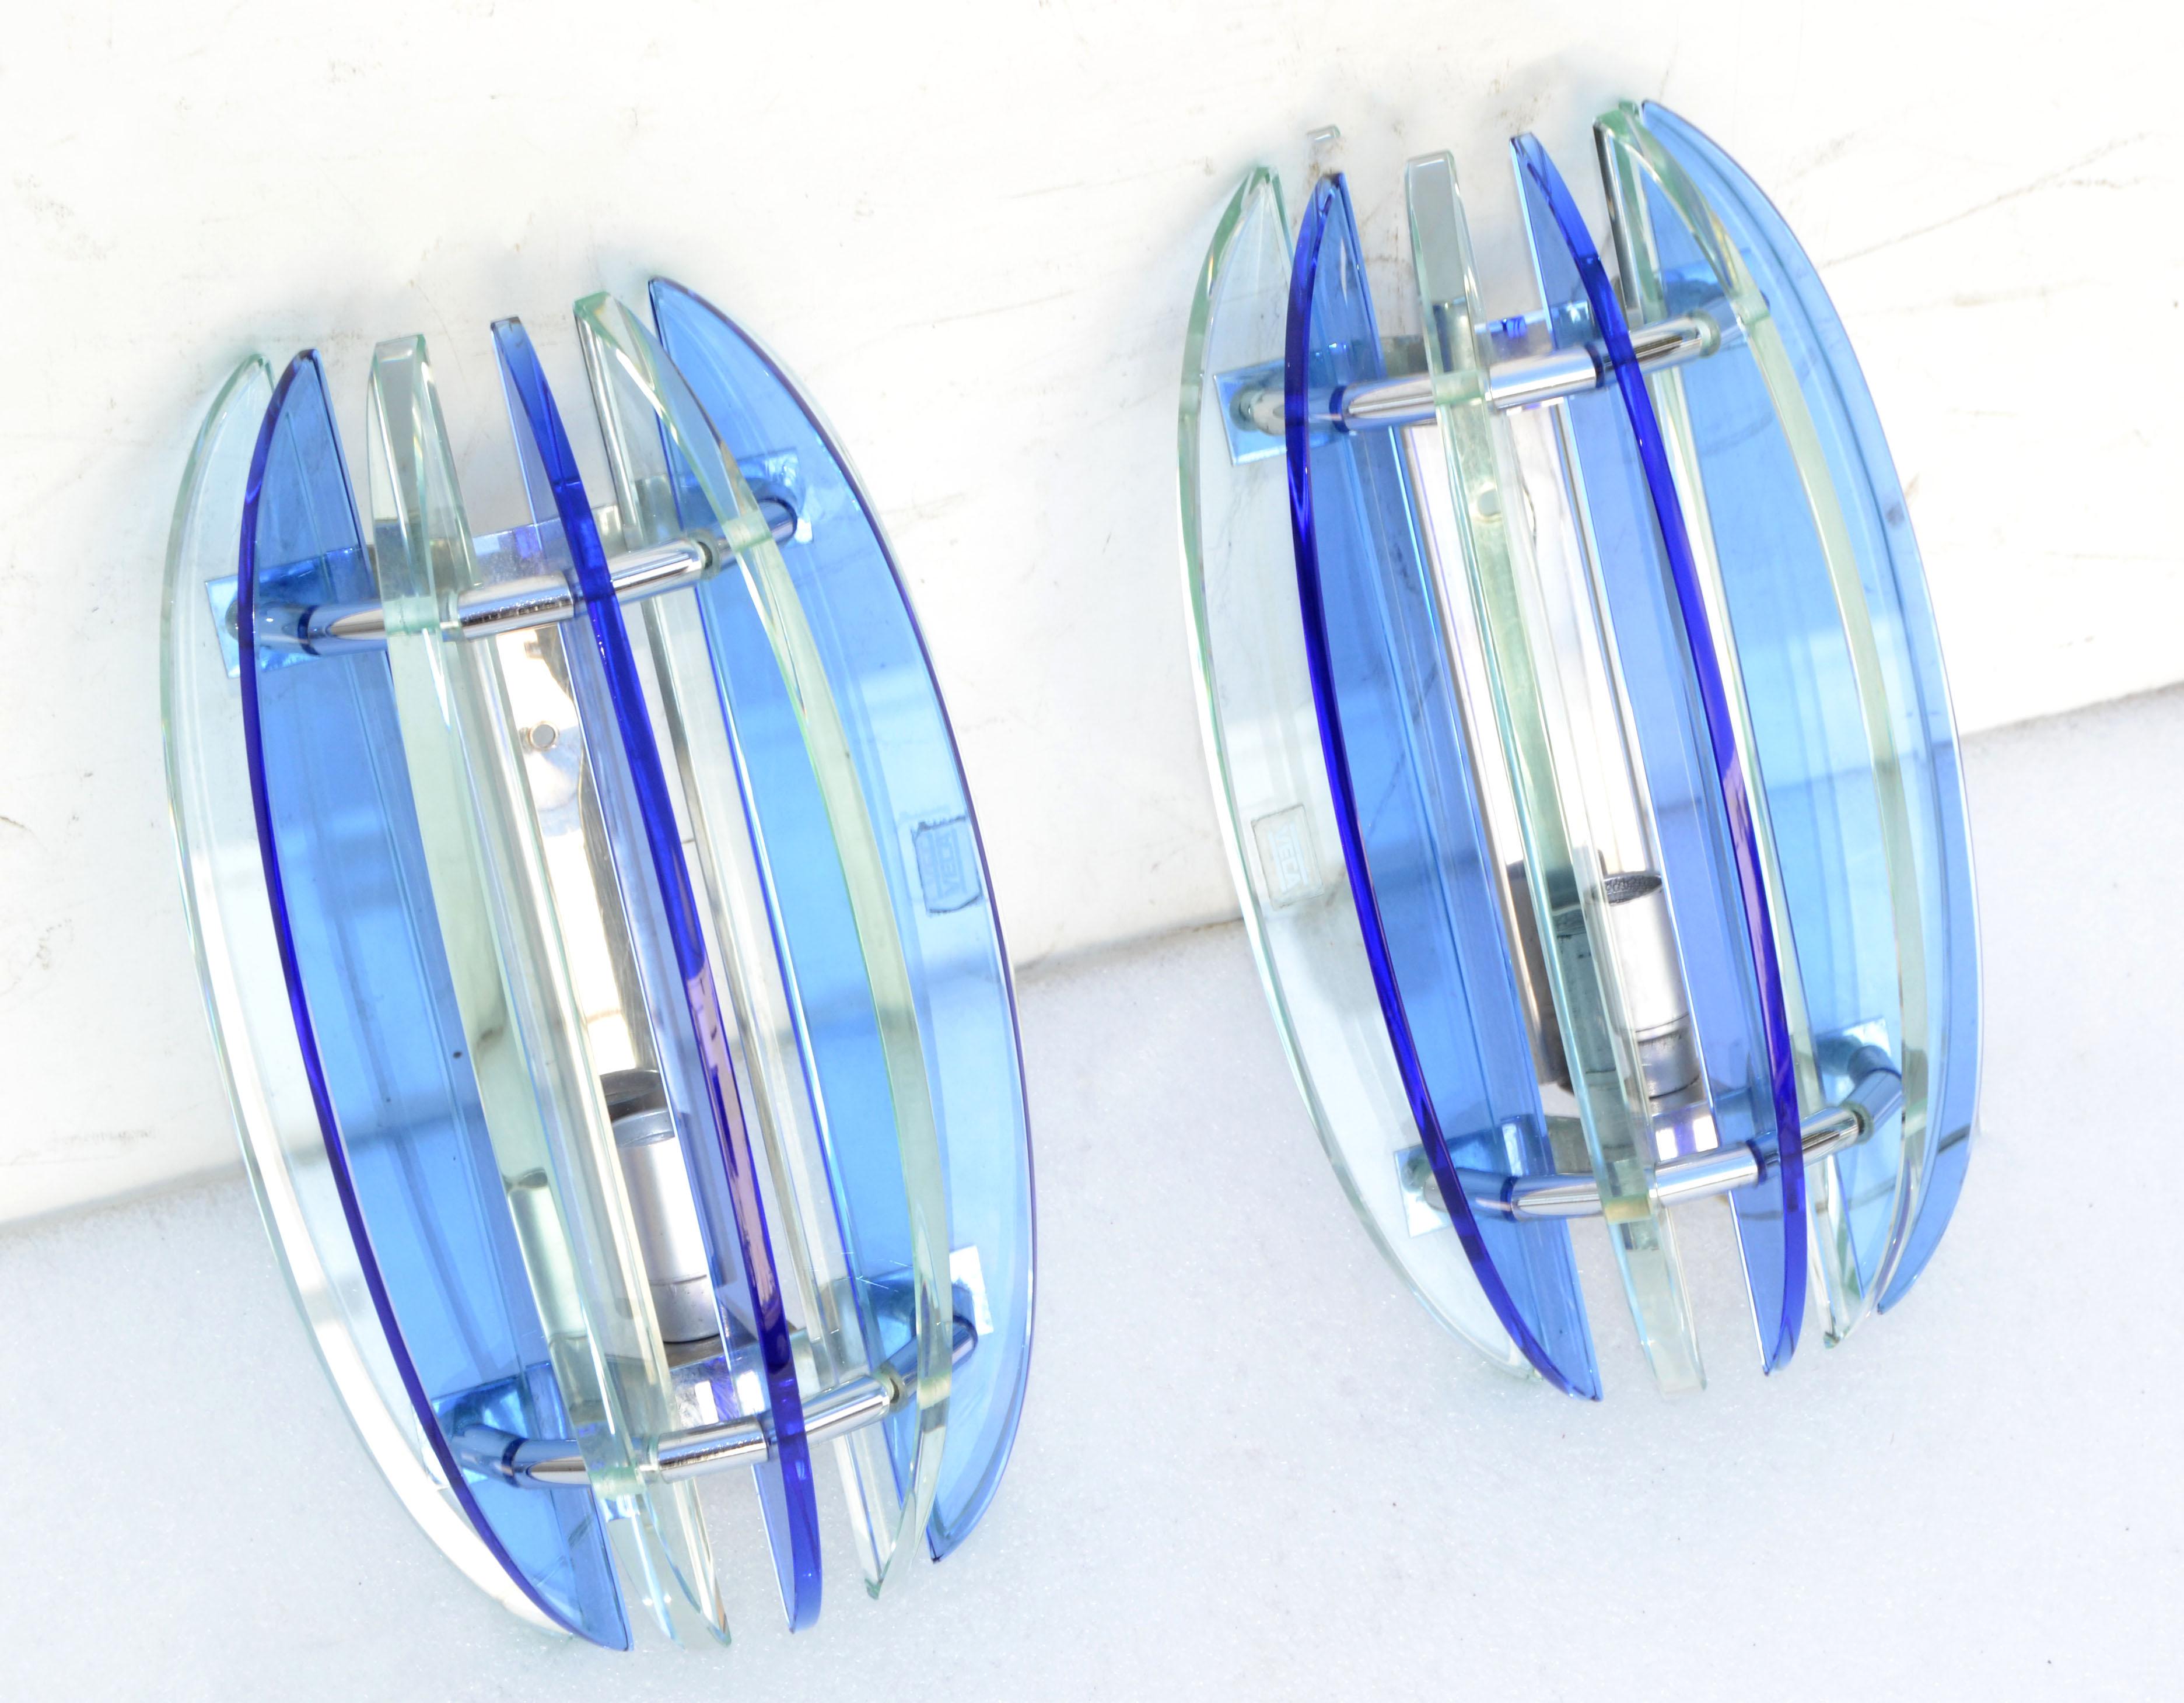 Hervorragendes Paar blaue und klare Glasklingen von Veca.
Wir haben 2 Paar verfügbar, Preis pro Paar.
US neu verkabelt und jeder Sconce nimmt eine Lampe, 60 Watt max.
Zurück Platte Maßnahmen: 6,25 x 1,5 x 0,25 Zoll Höhe.
Projektion der Wand: 4,5